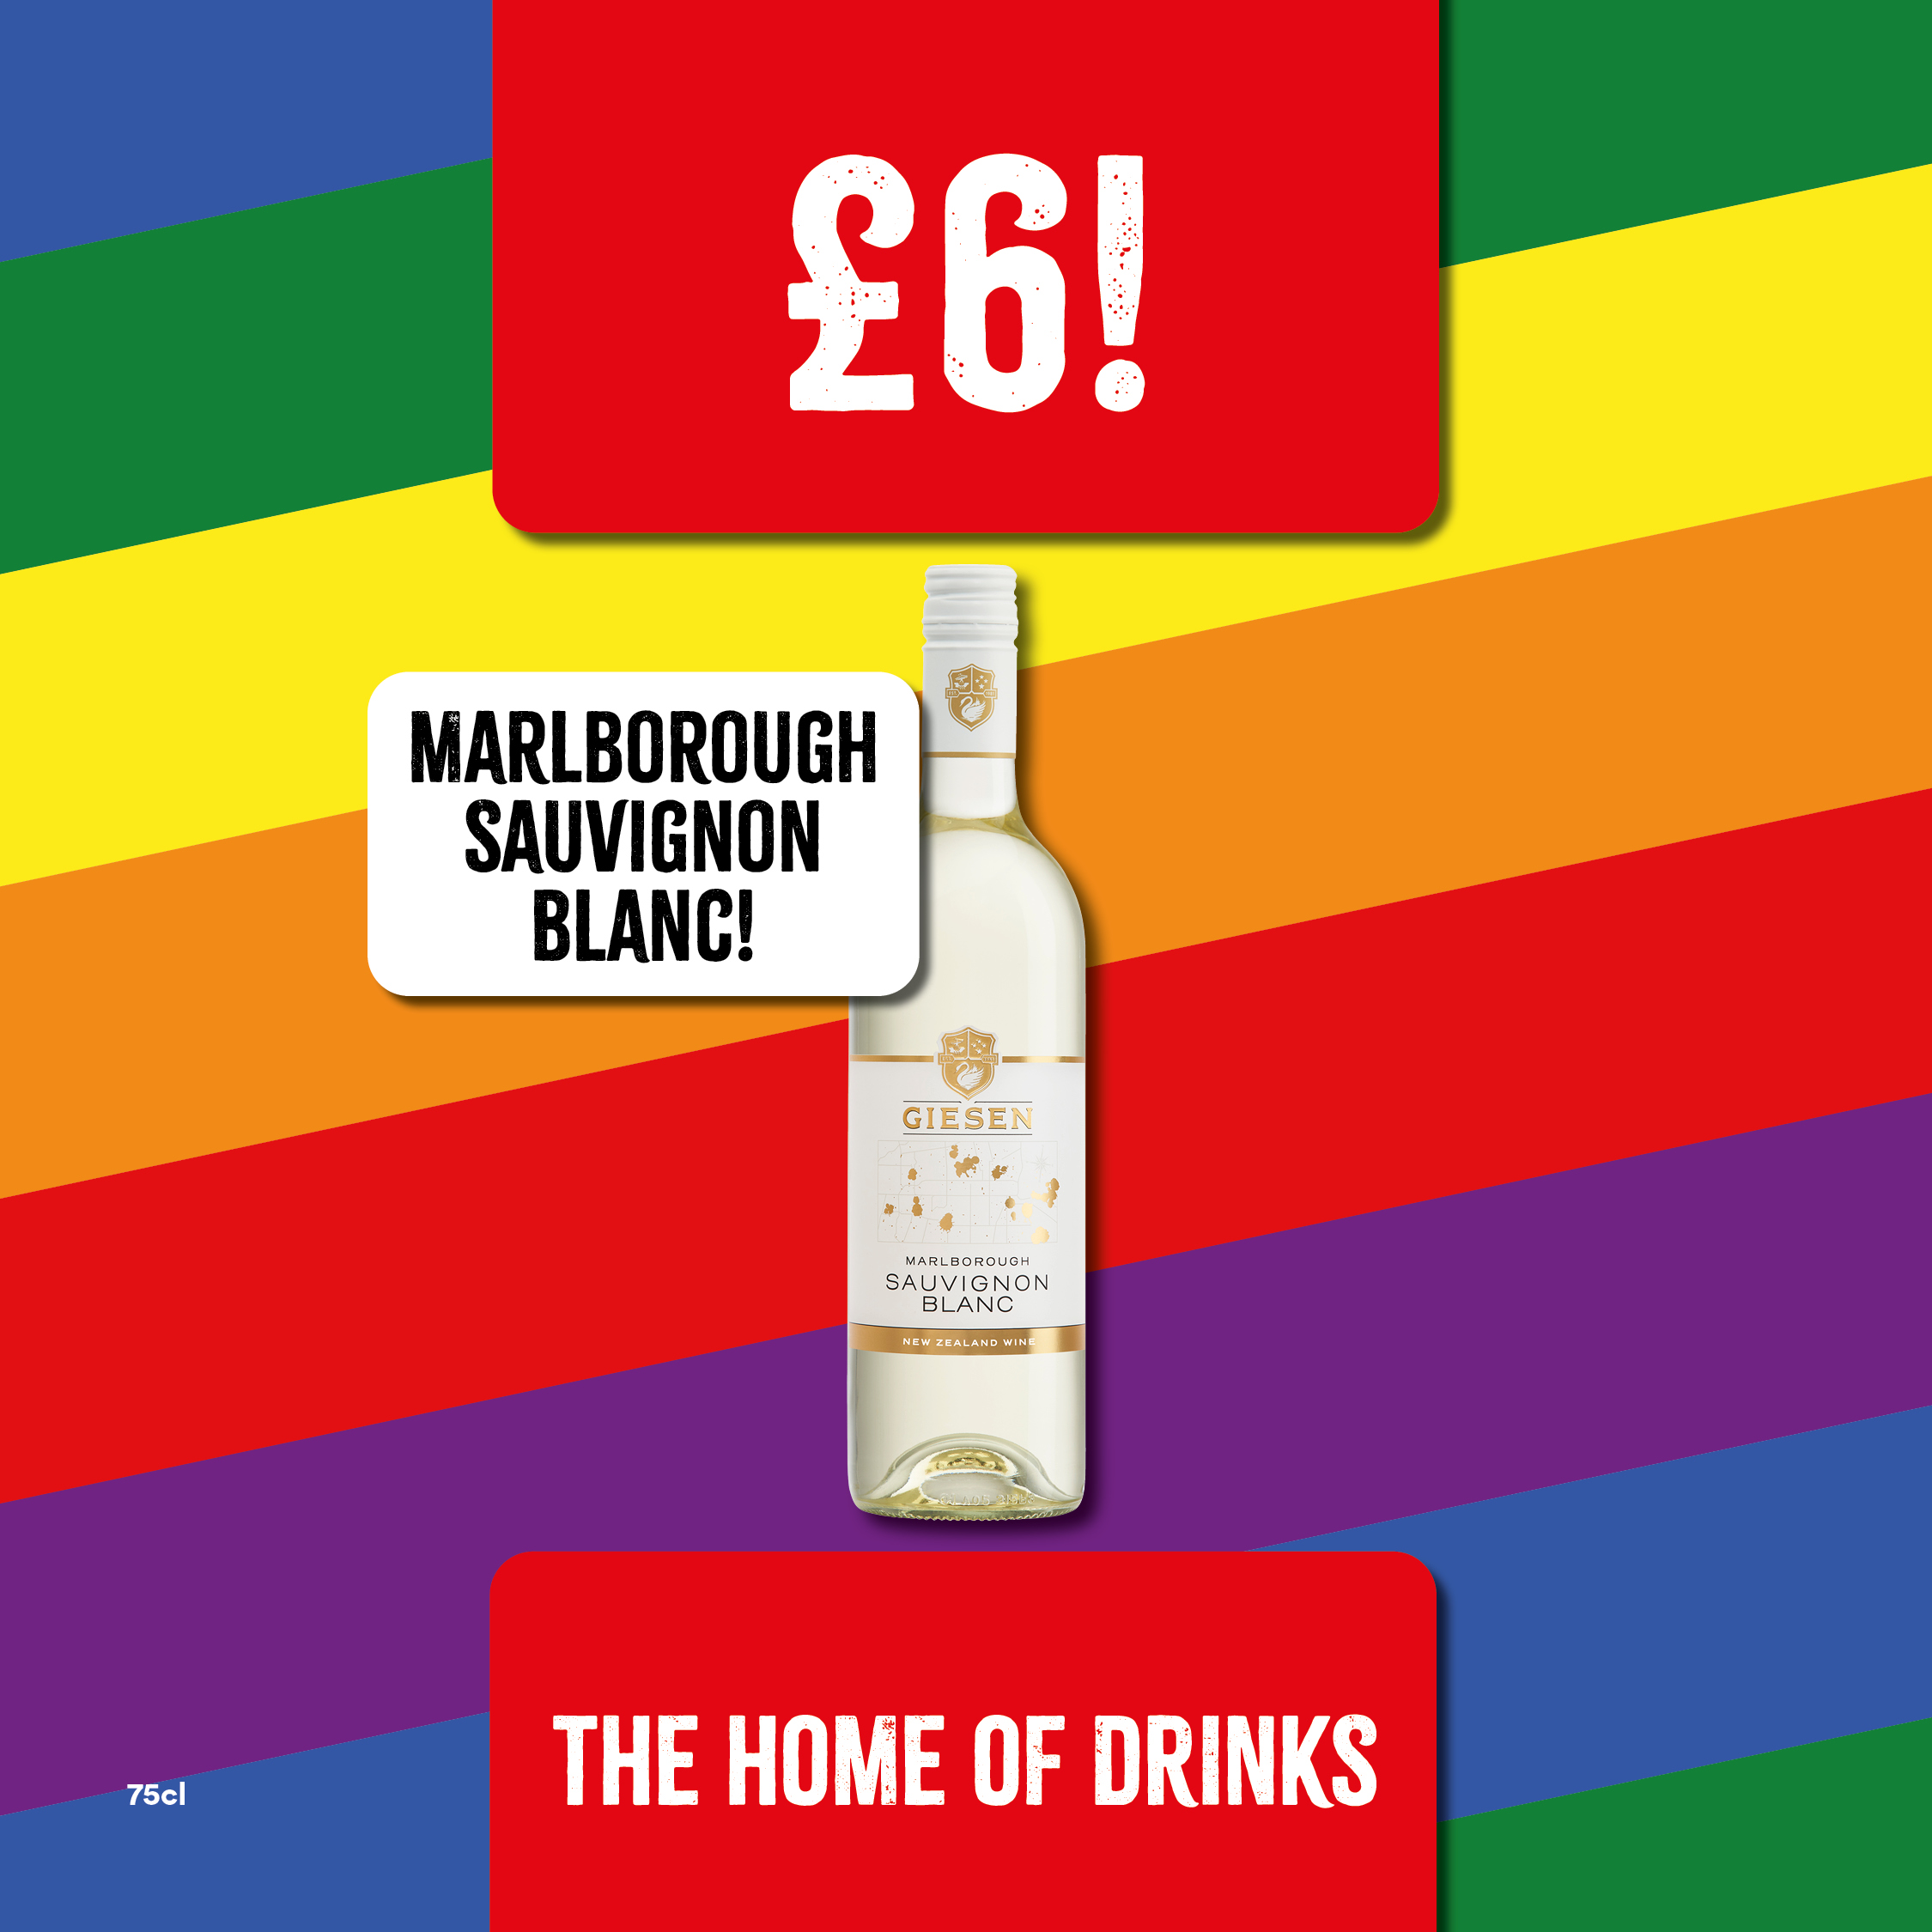 Only £6 Marlborough Sauvignon Blanc Bargain Booze Select Convenience Morecambe 01524 832816